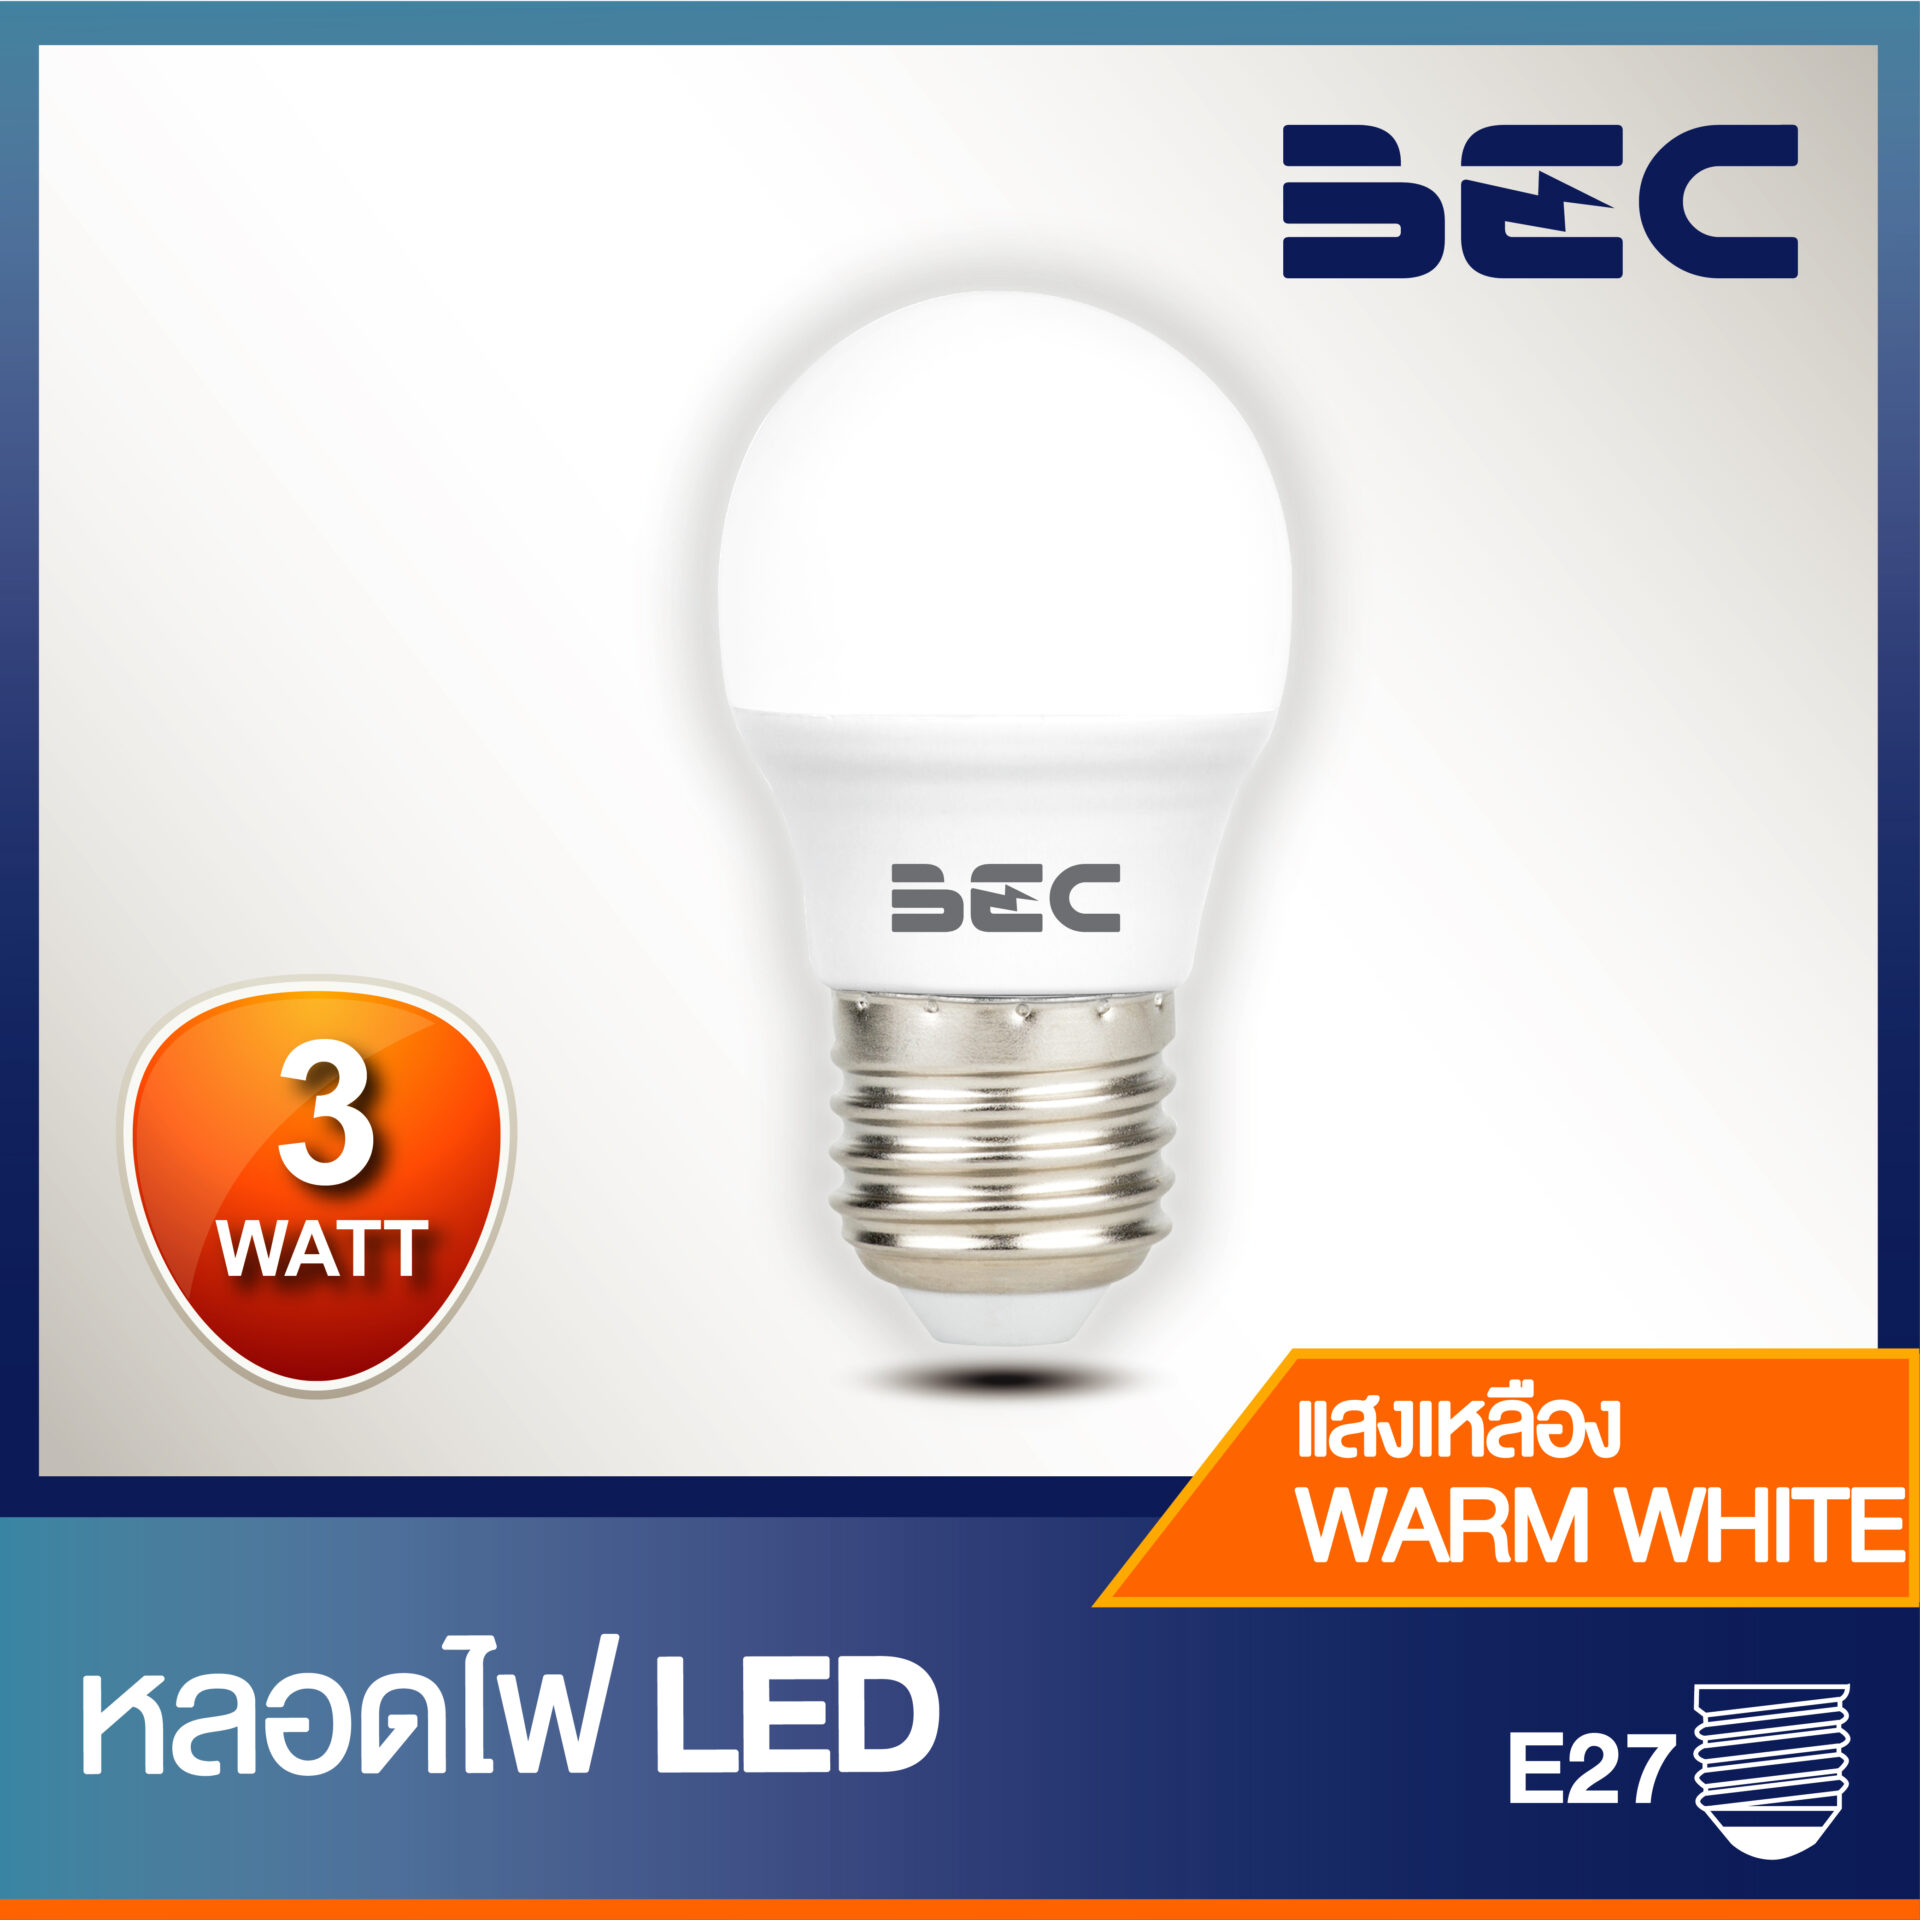 BEC หลอดไฟ LED Bulb G45 3W ขั้วE27 - พี เอส ซี คอมเมอร์เชียล